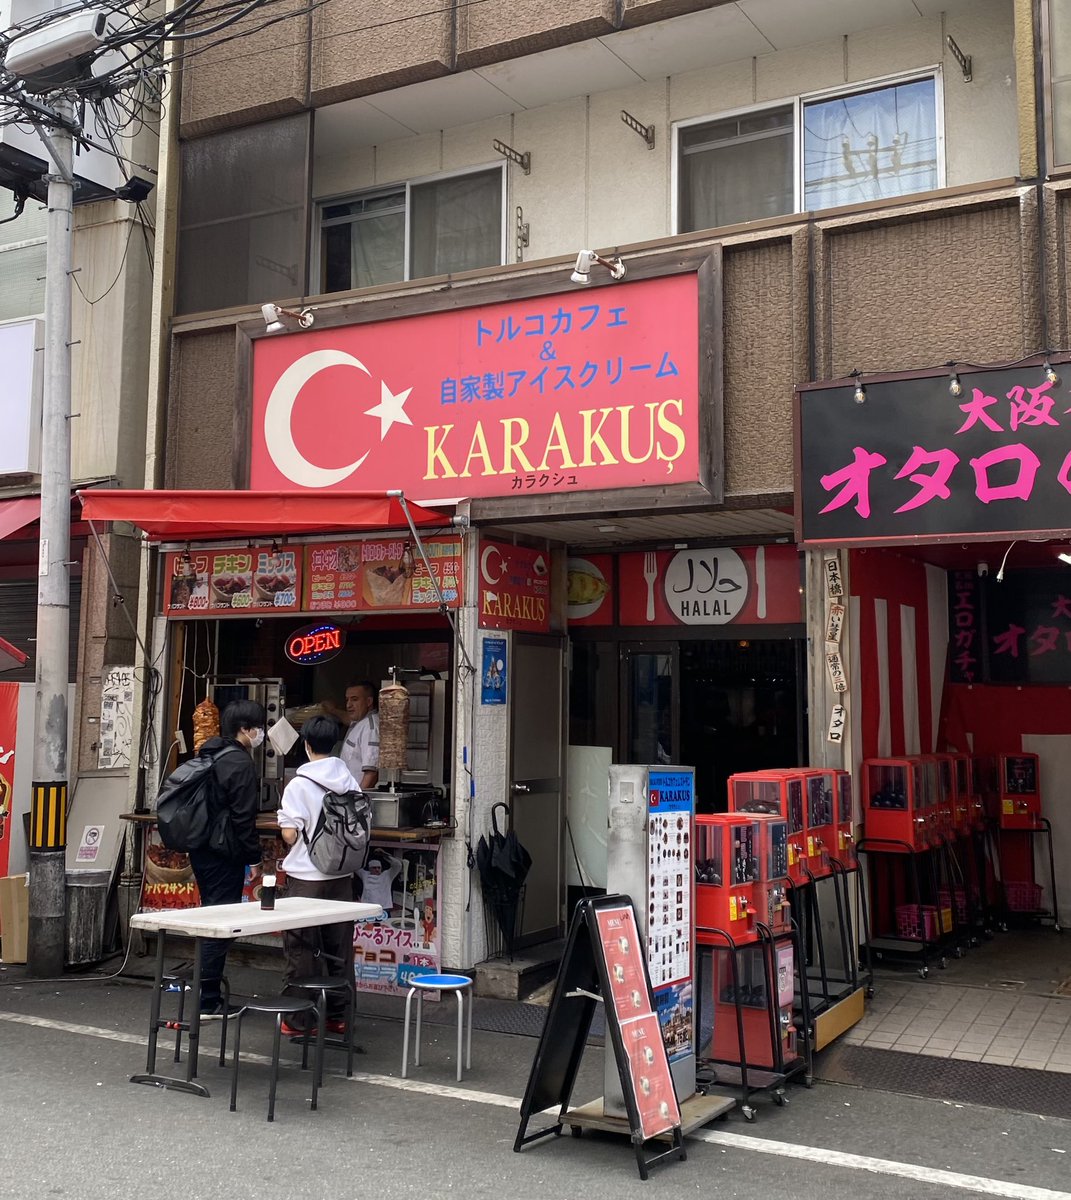 @MishoAmoli lo de que me acabe de encontrar un donner kebab en Japón que se llame Karakus…? 🤠